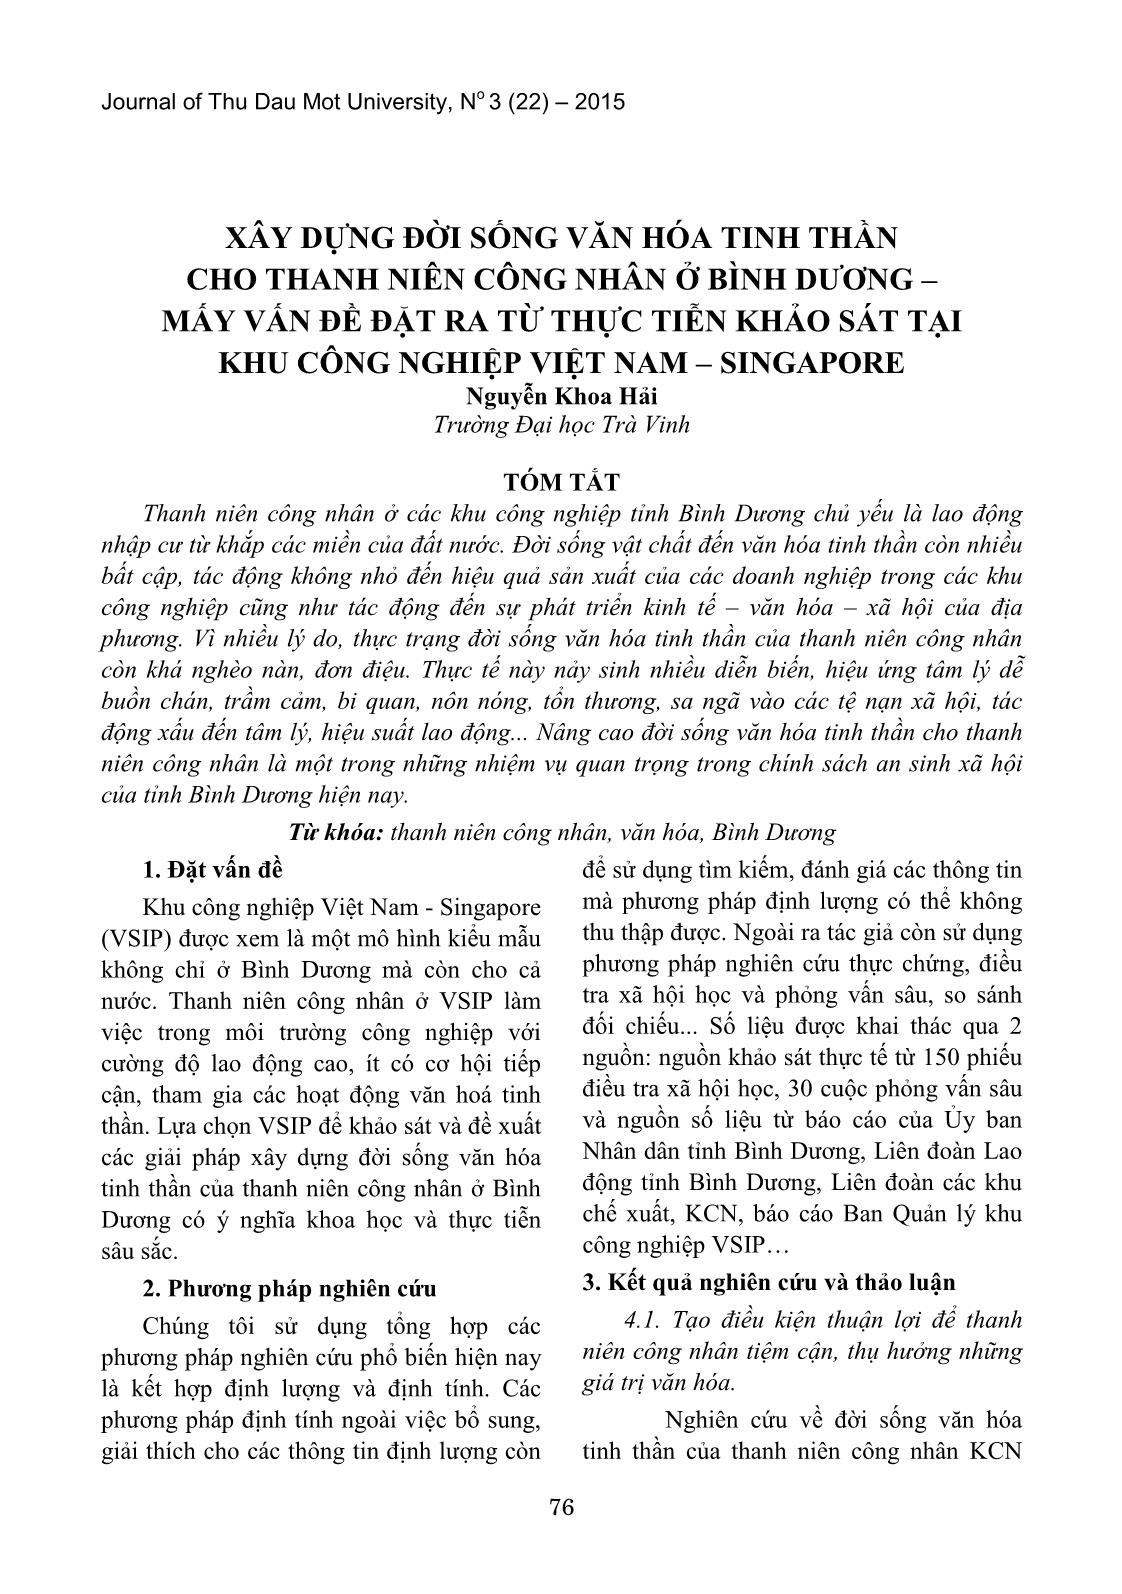 Xây dựng đời sống văn hóa tinh thần cho thanh niên công nhân ở Bình Dương – mấy vấn đề đặt ra từ thực tiễn khảo sát tại khu công nghiệp Việt Nam – Singapore trang 1